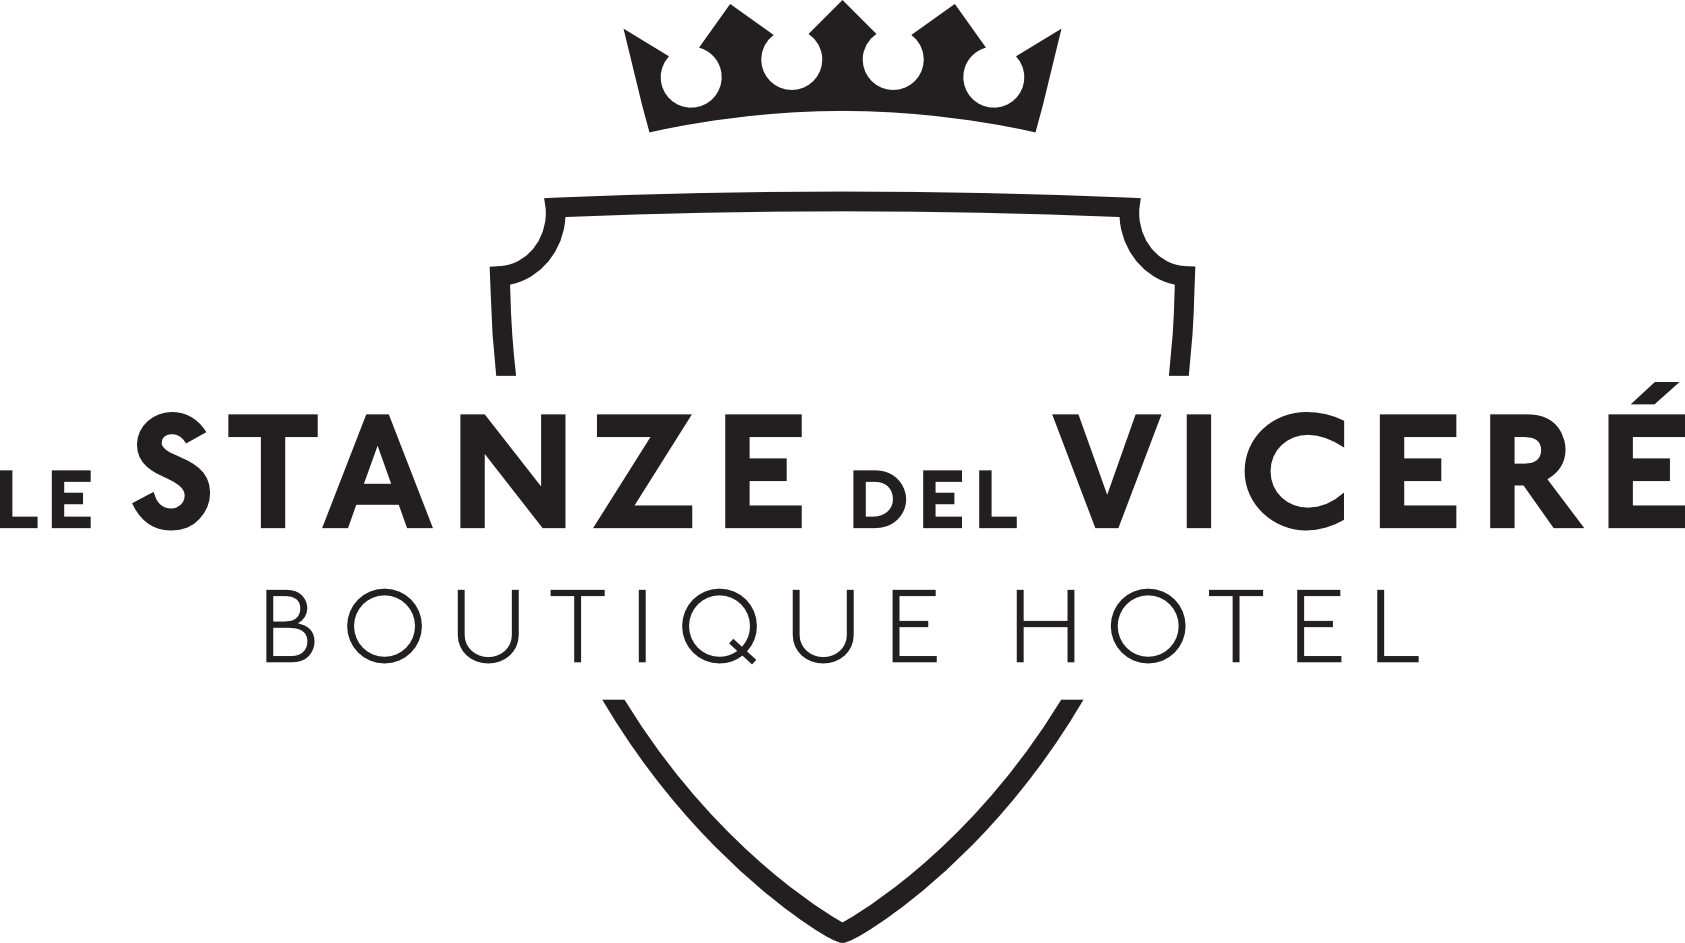 Boutique hotel Napoli – Le stanze del Vicerè